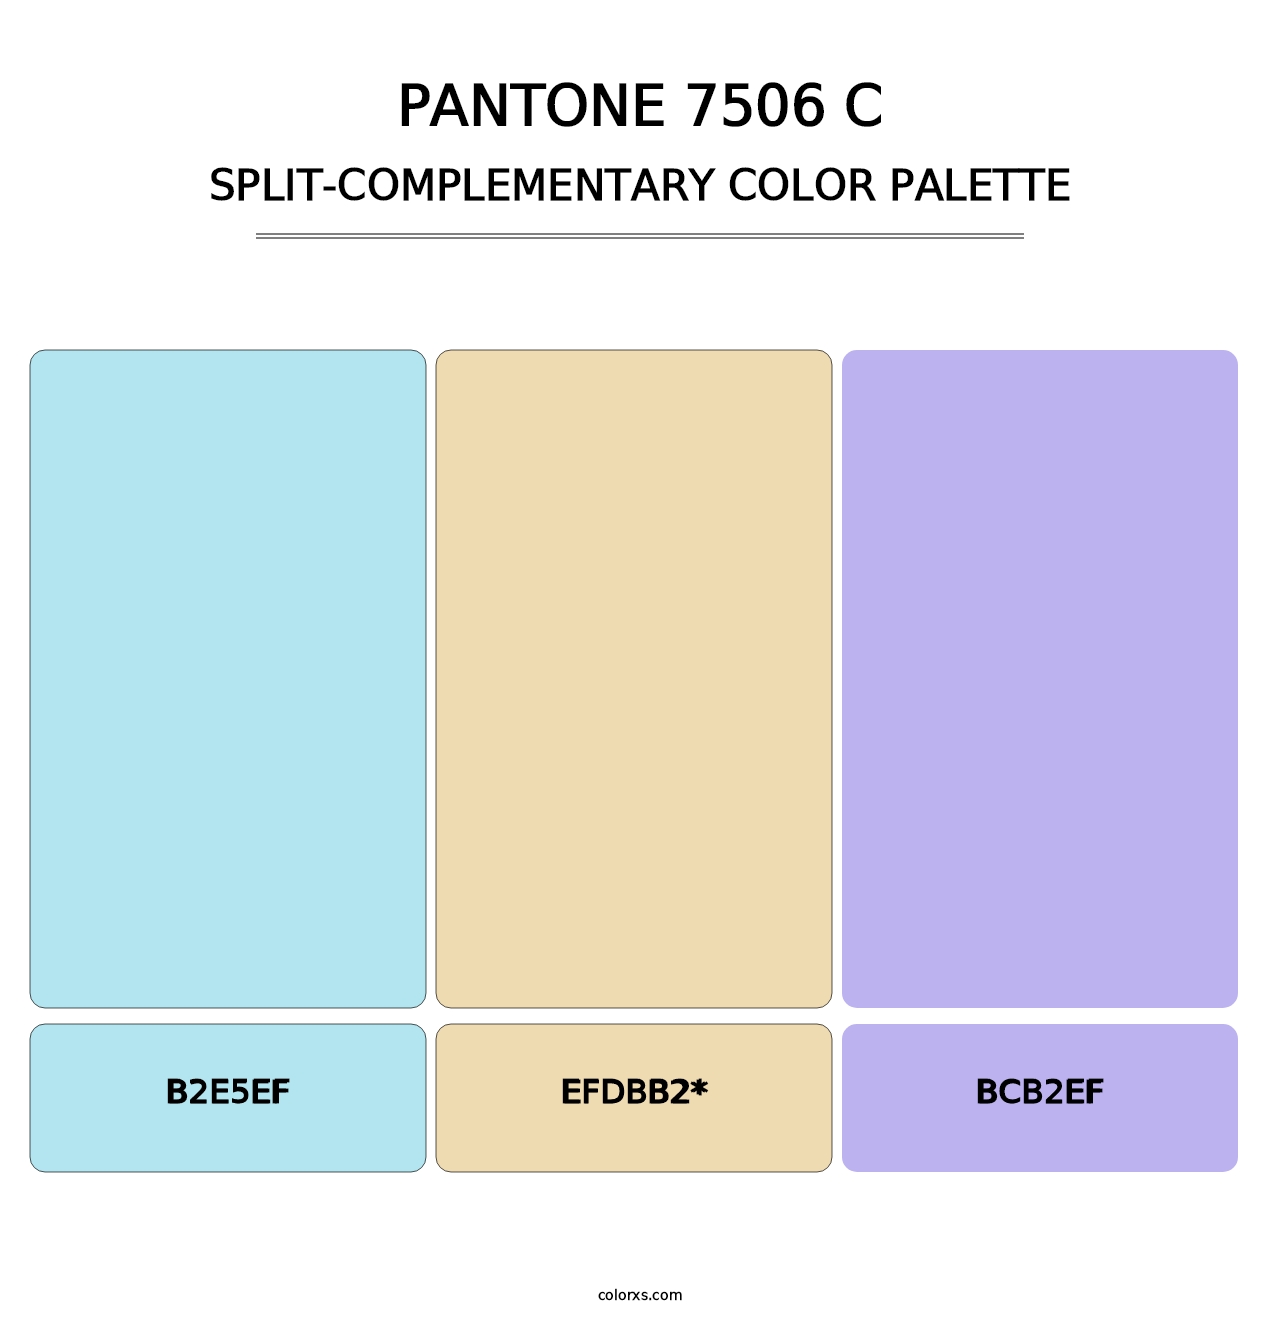 PANTONE 7506 C - Split-Complementary Color Palette